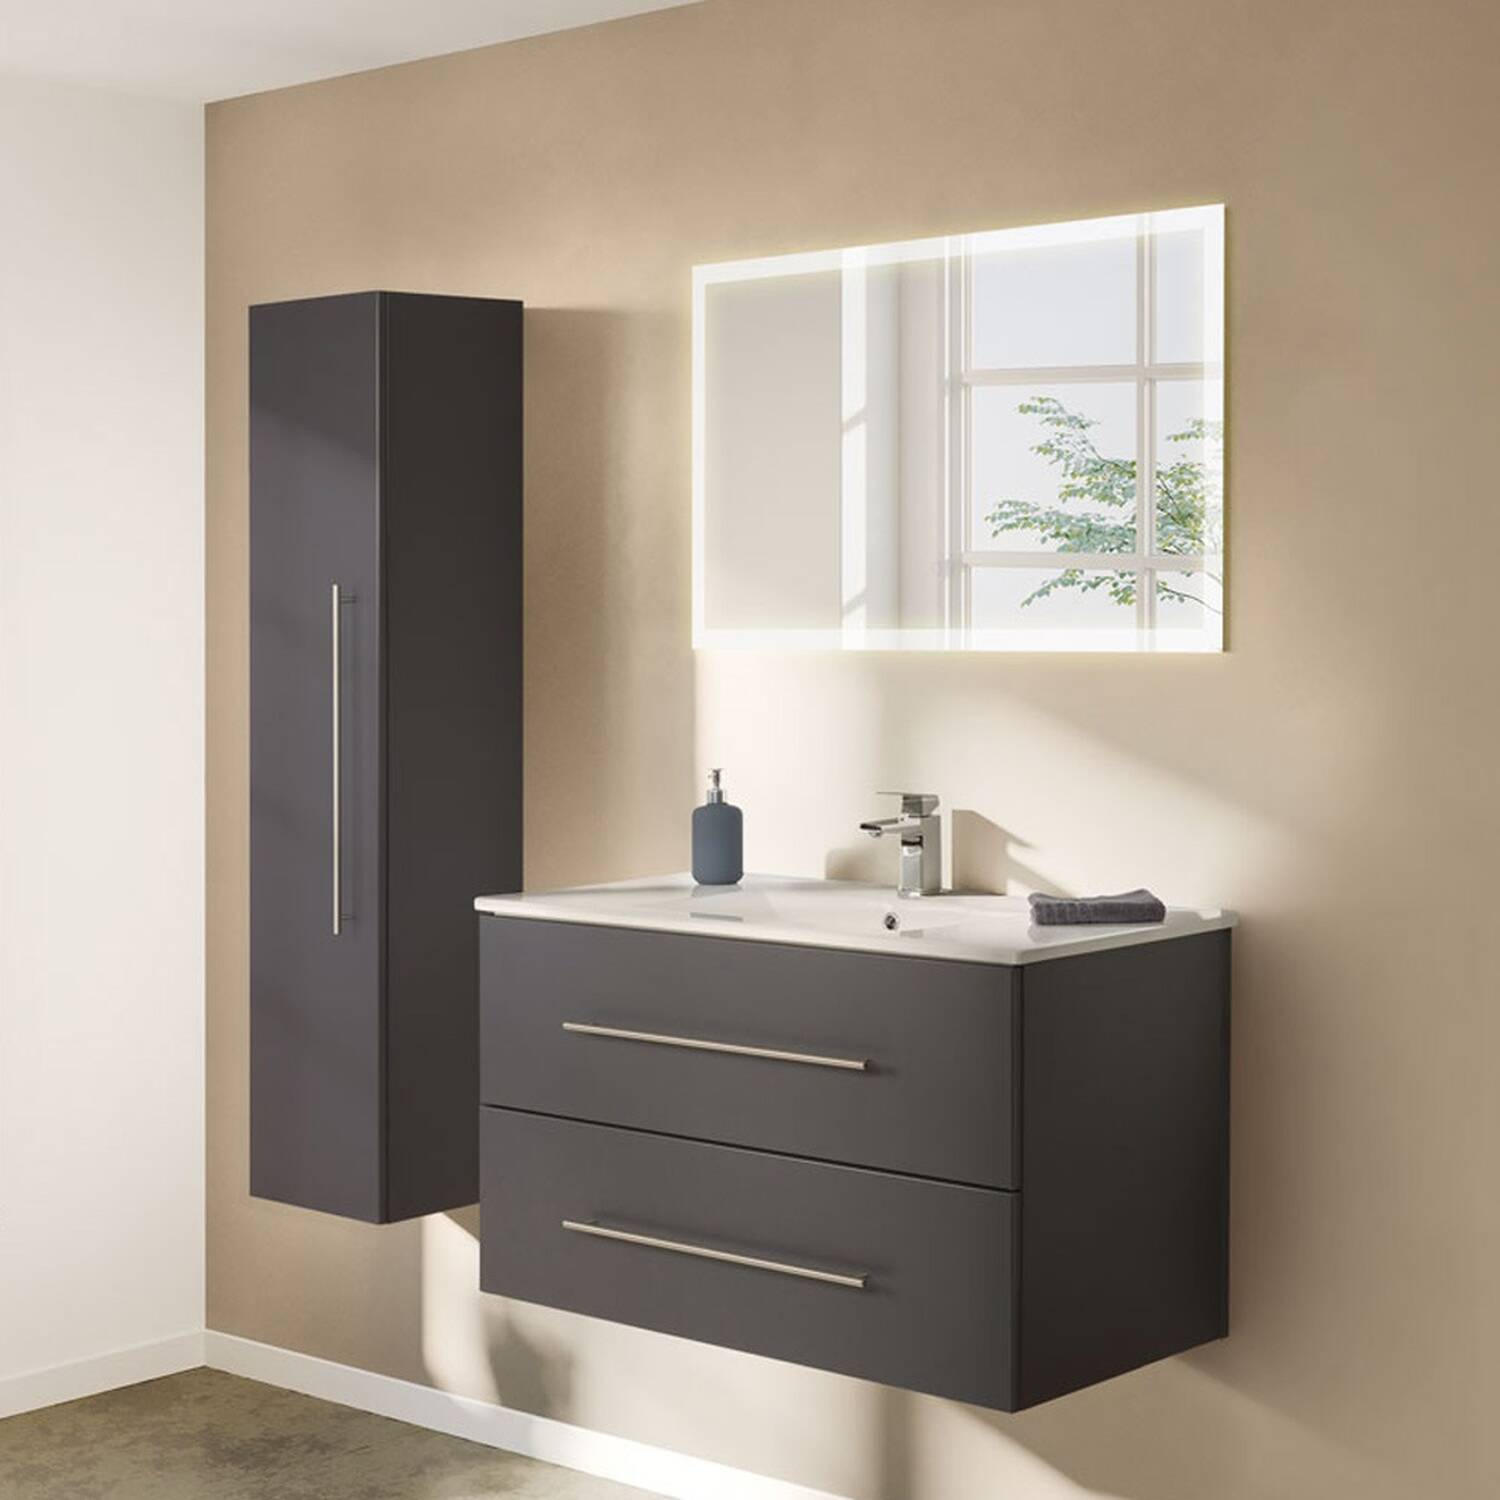 Badezimmer Set anthrazit Seidenglanz dunkel mit Waschbecken modernes Badezimmer Designmöbel Badschrank Waschtisch Gäste WC